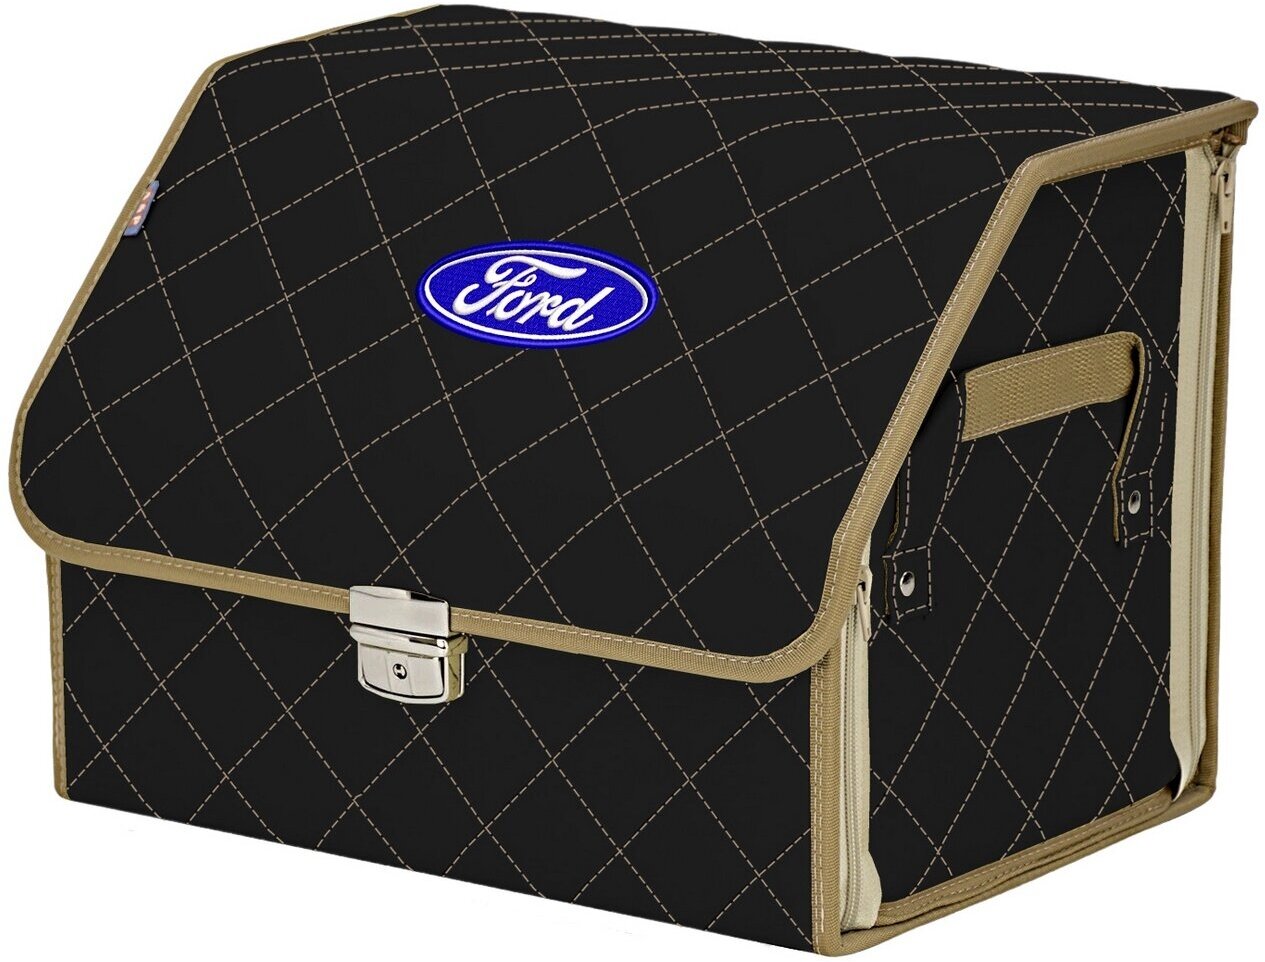 Органайзер-саквояж в багажник "Союз Премиум" (размер M). Цвет: черный с бежевой прострочкой Ромб и вышивкой Ford (Форд).